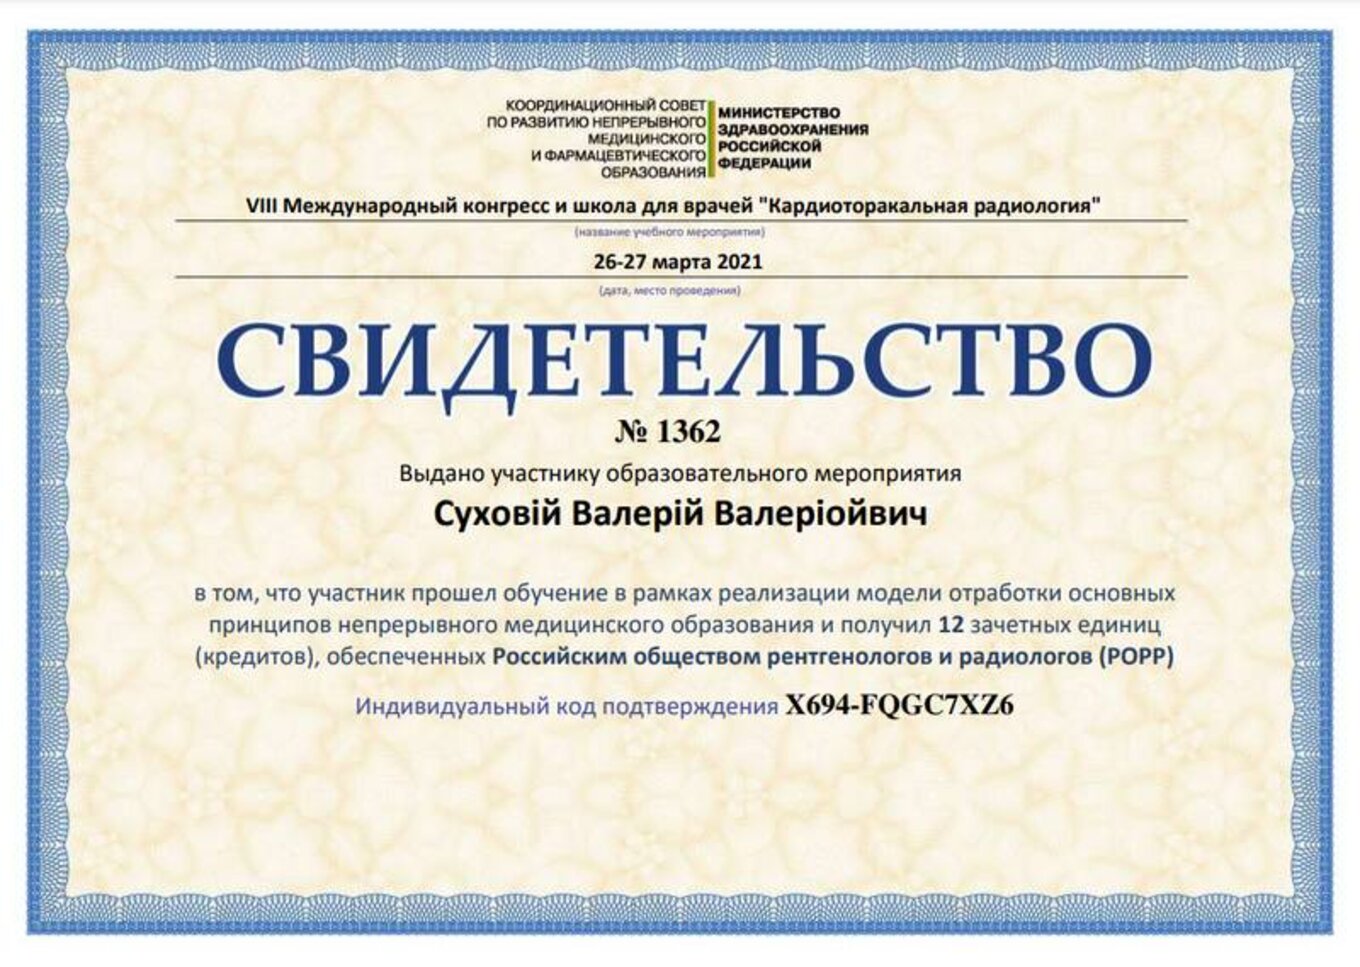 certificates/suhovej-valerij-valerijovich/erc-suhovej-certificates-12.jpg